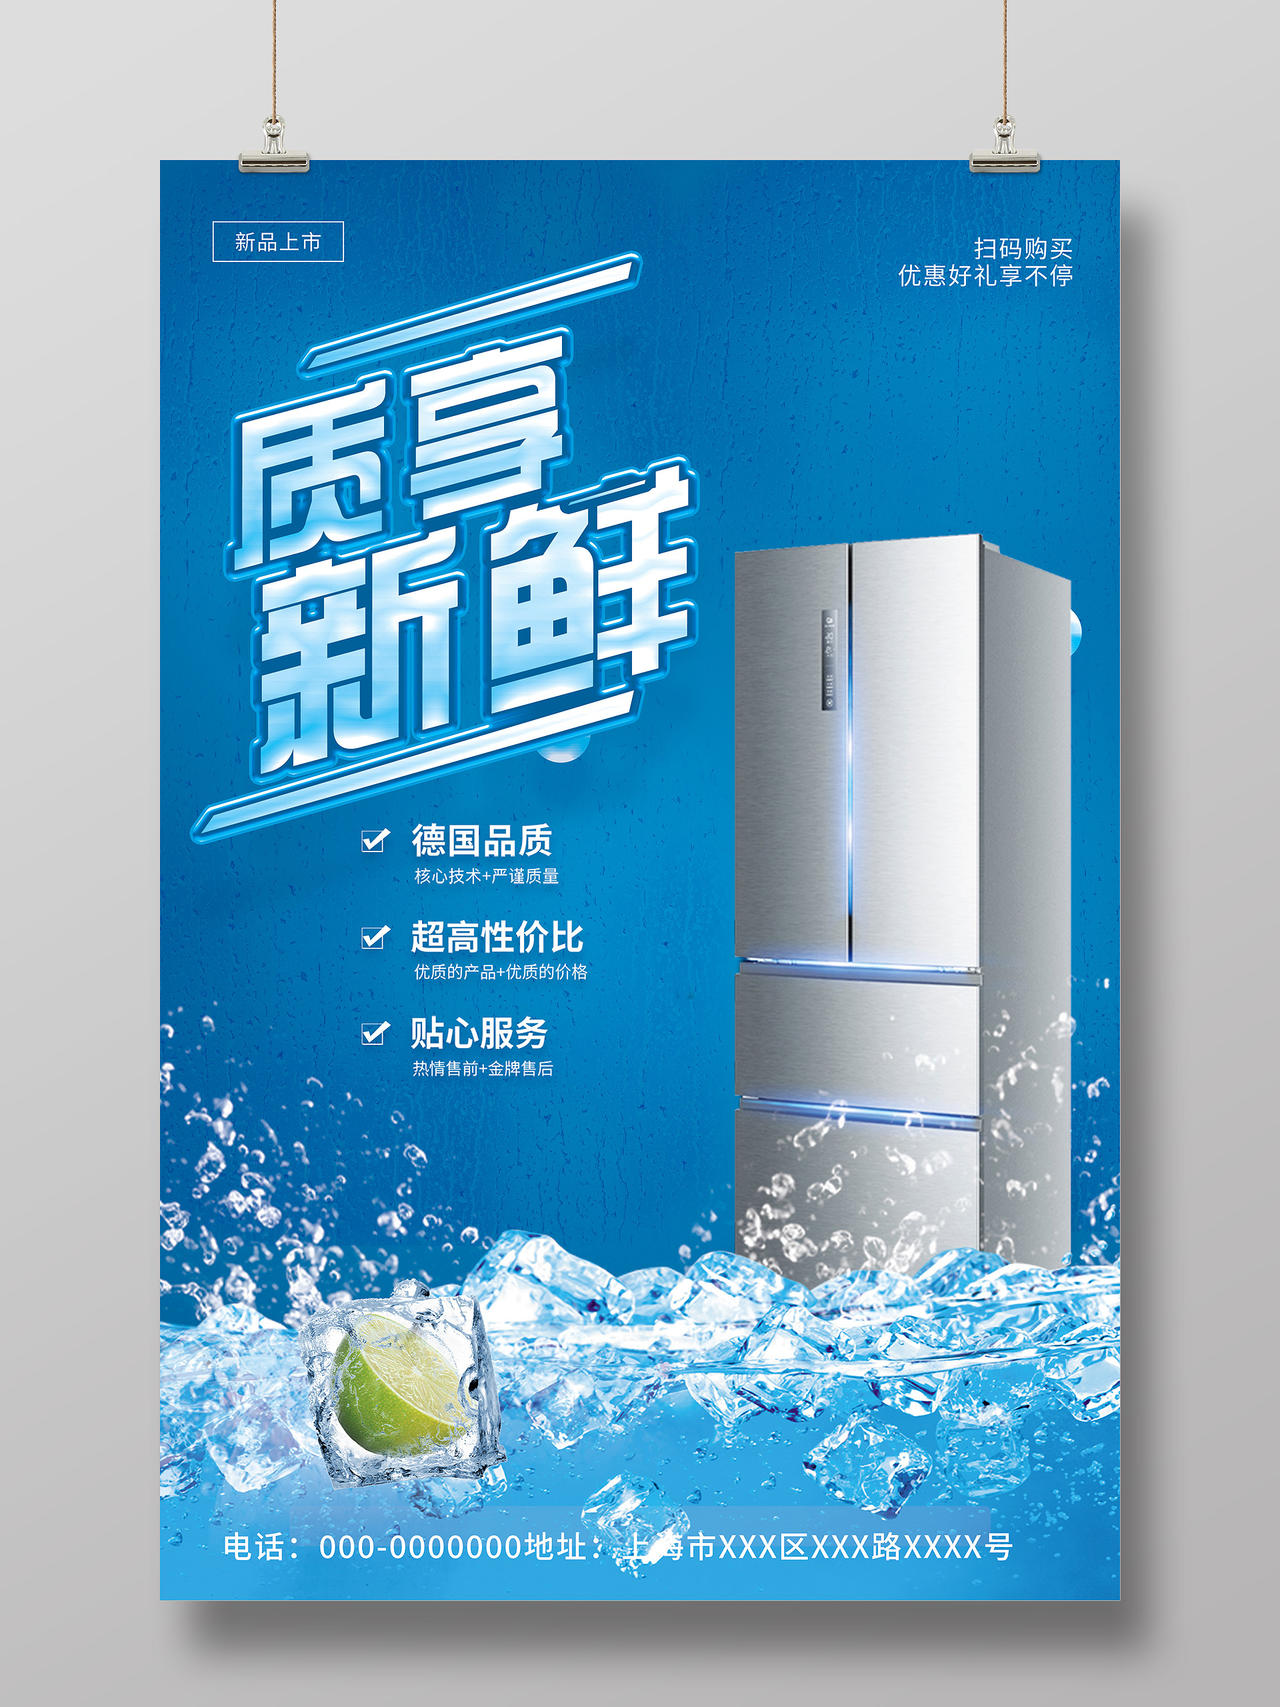 蓝色简约质享新鲜电器家电冰箱宣传活动海报